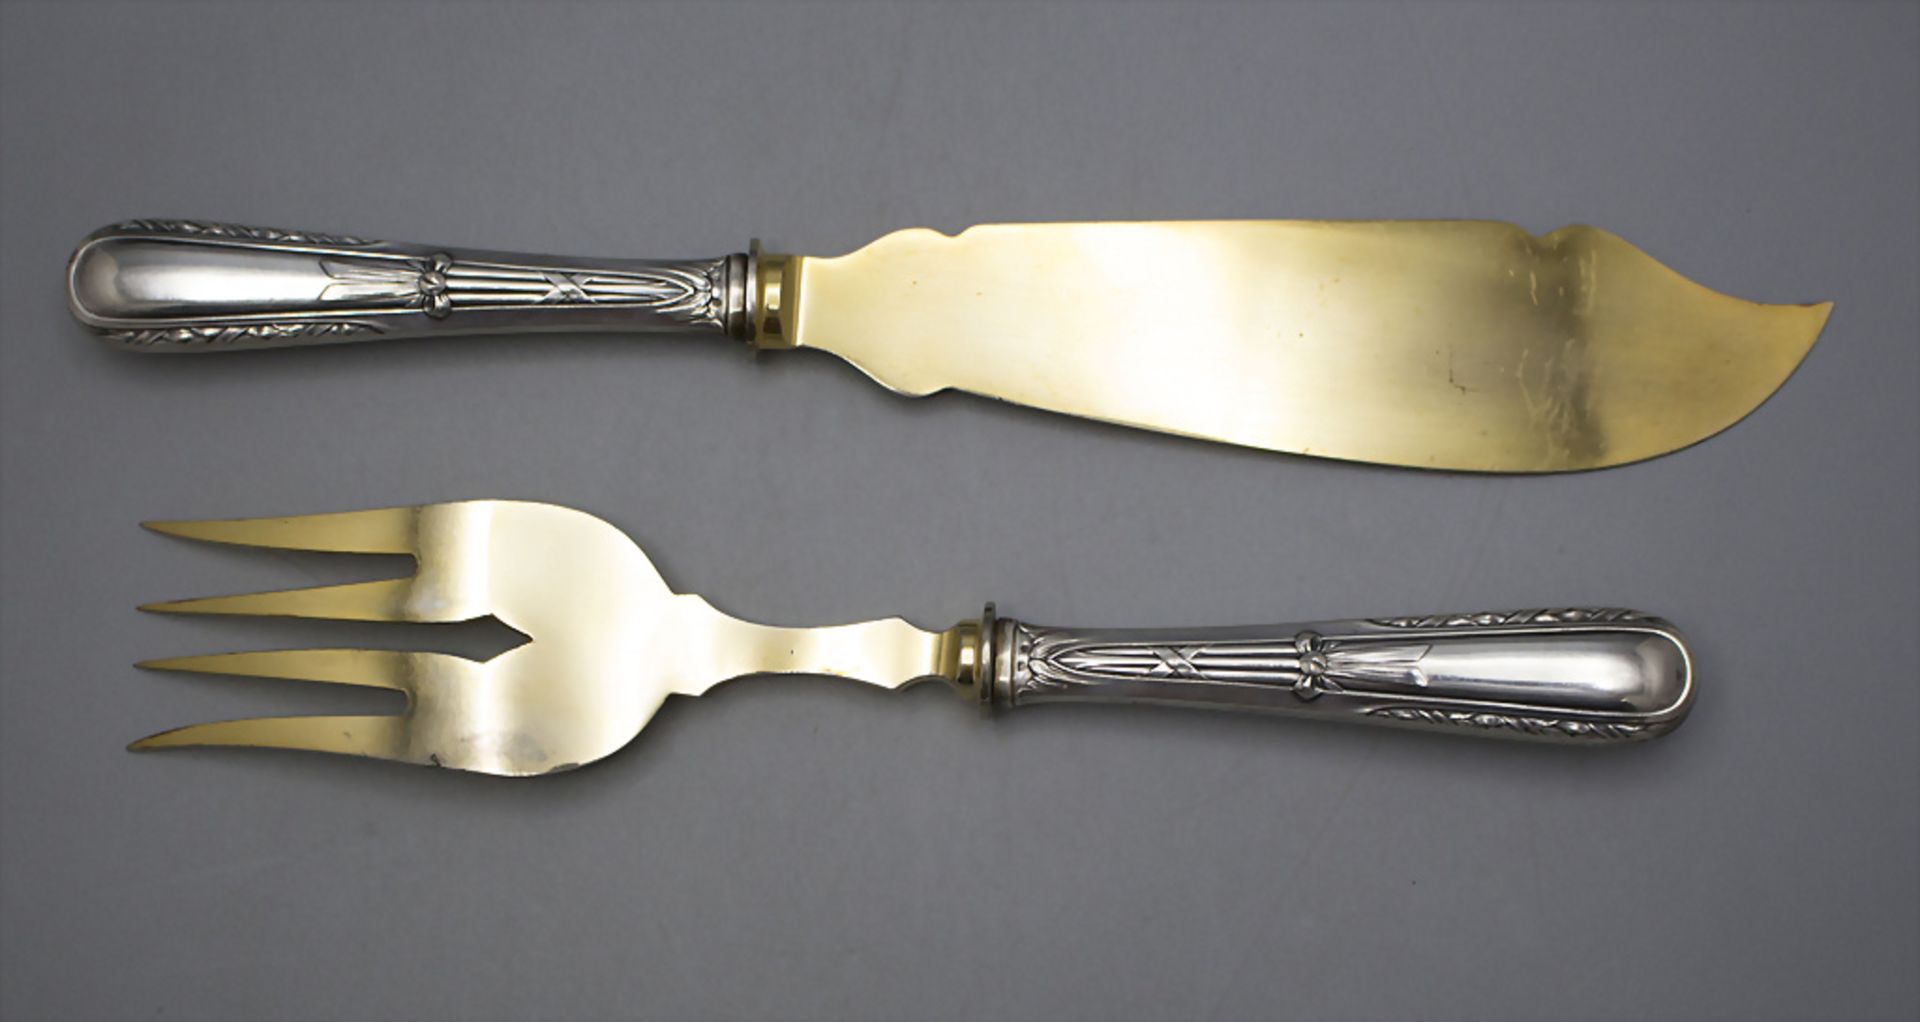 2 Teile Vorlegebesteck / A 2-piece set of serving cutlery, um 1900 - Image 2 of 4